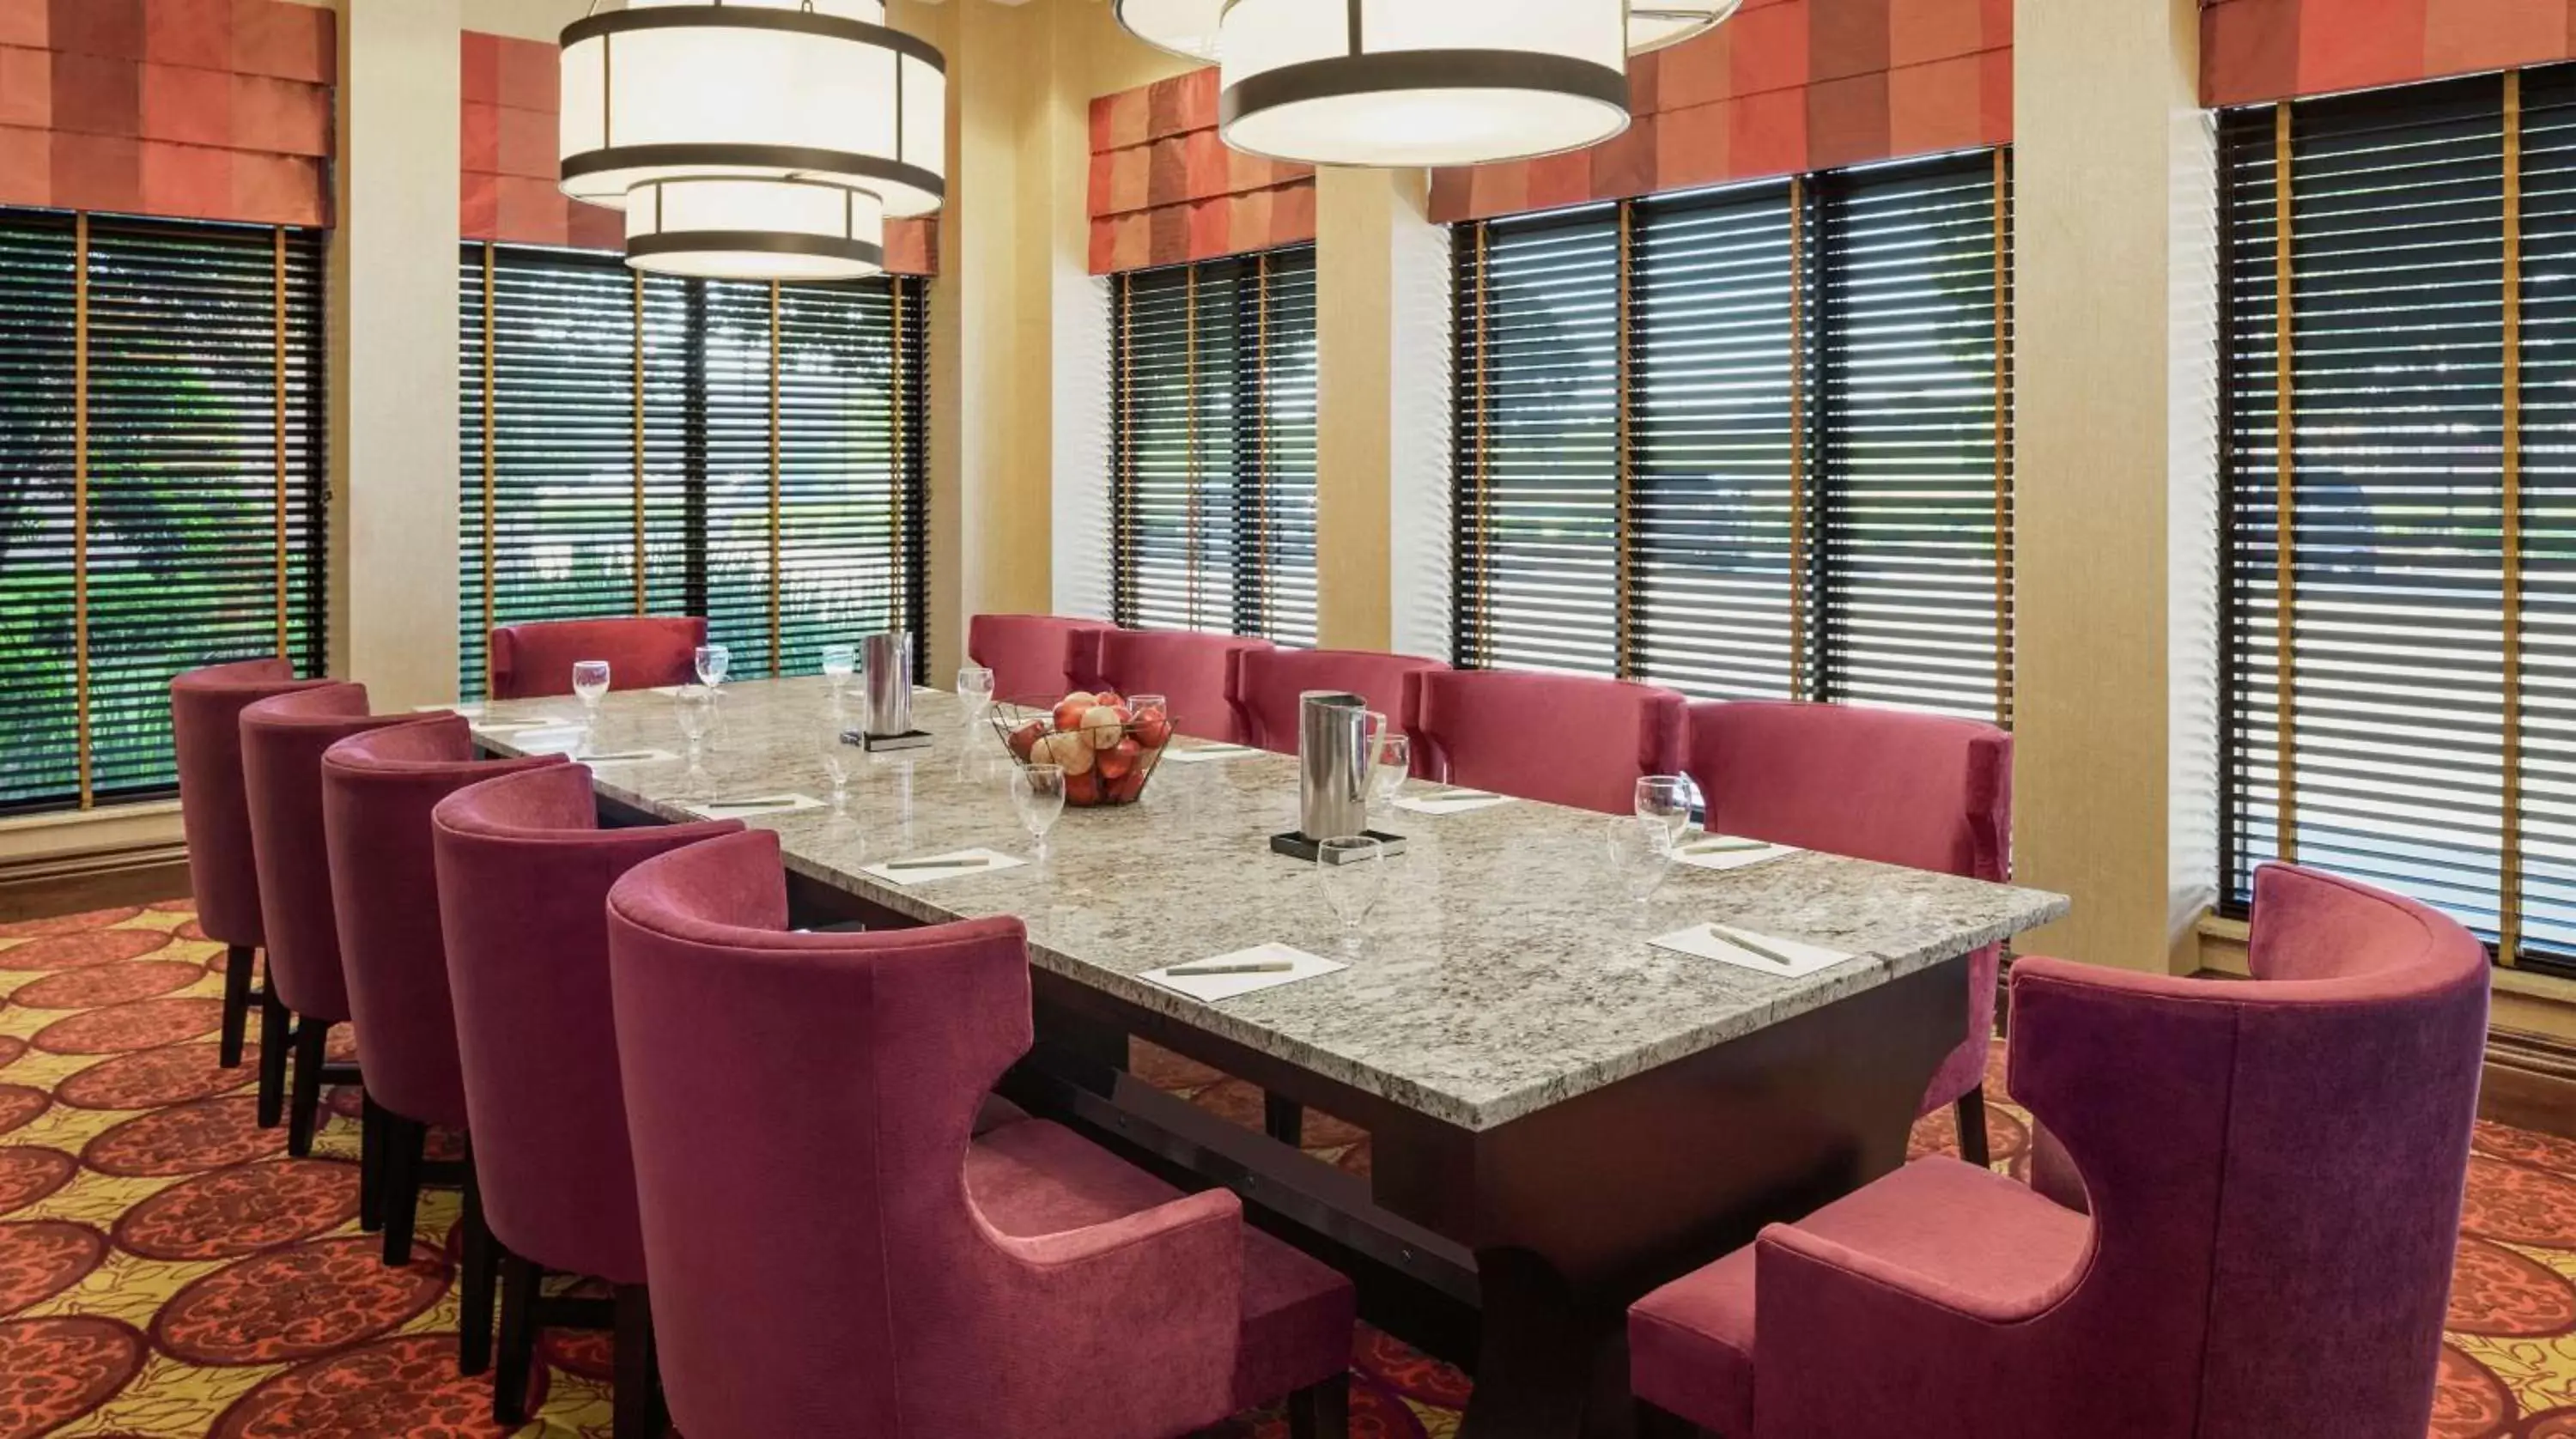 Meeting/conference room, Restaurant/Places to Eat in Hilton Garden Inn Shreveport Bossier City